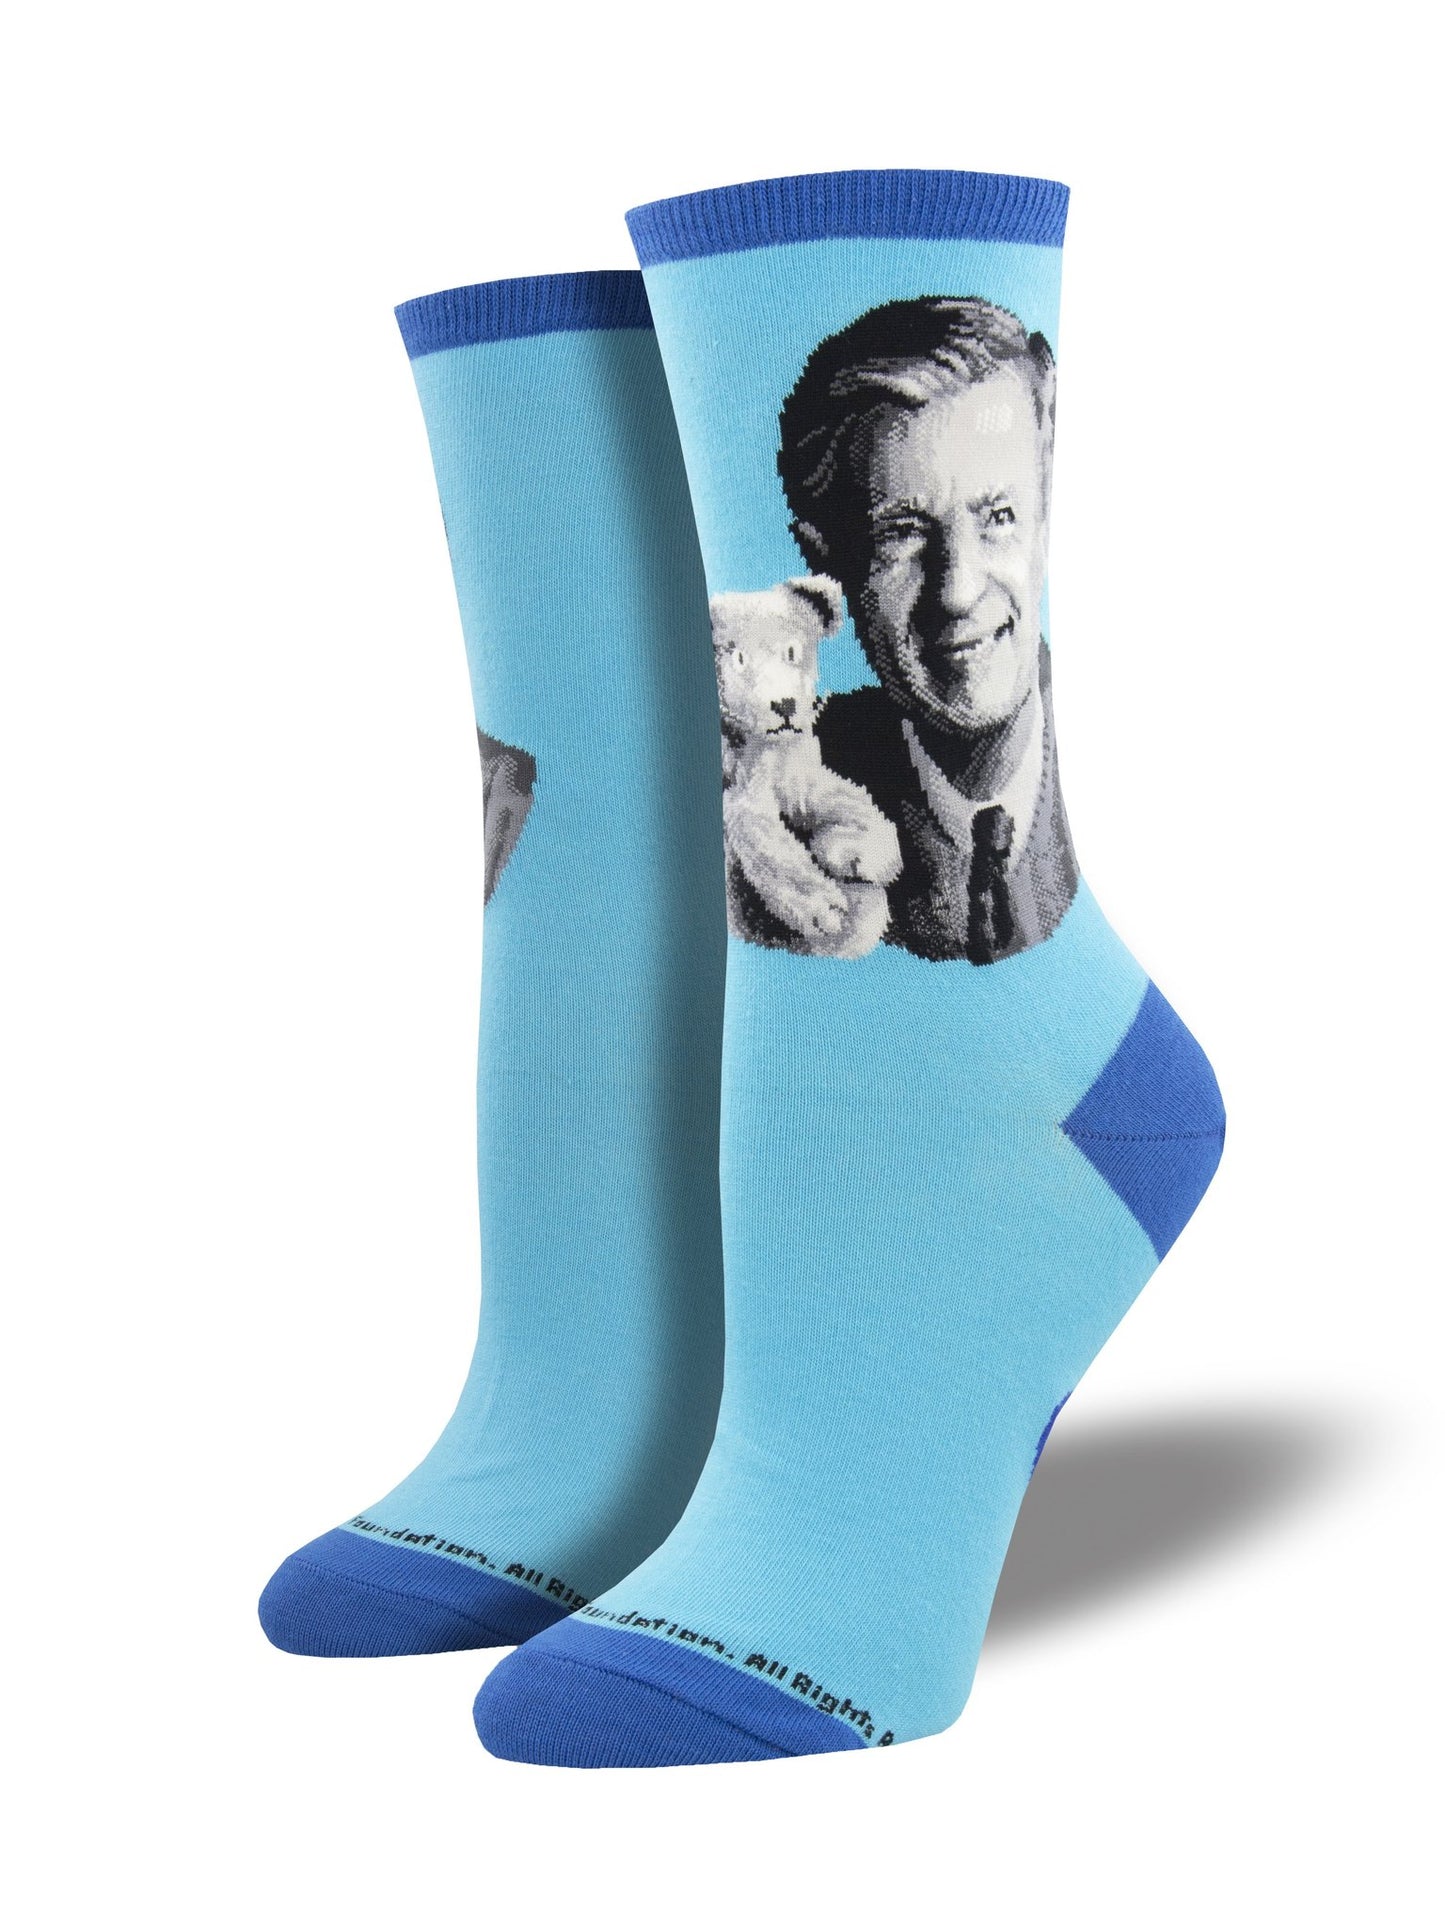 Mr. Rogers women's socks